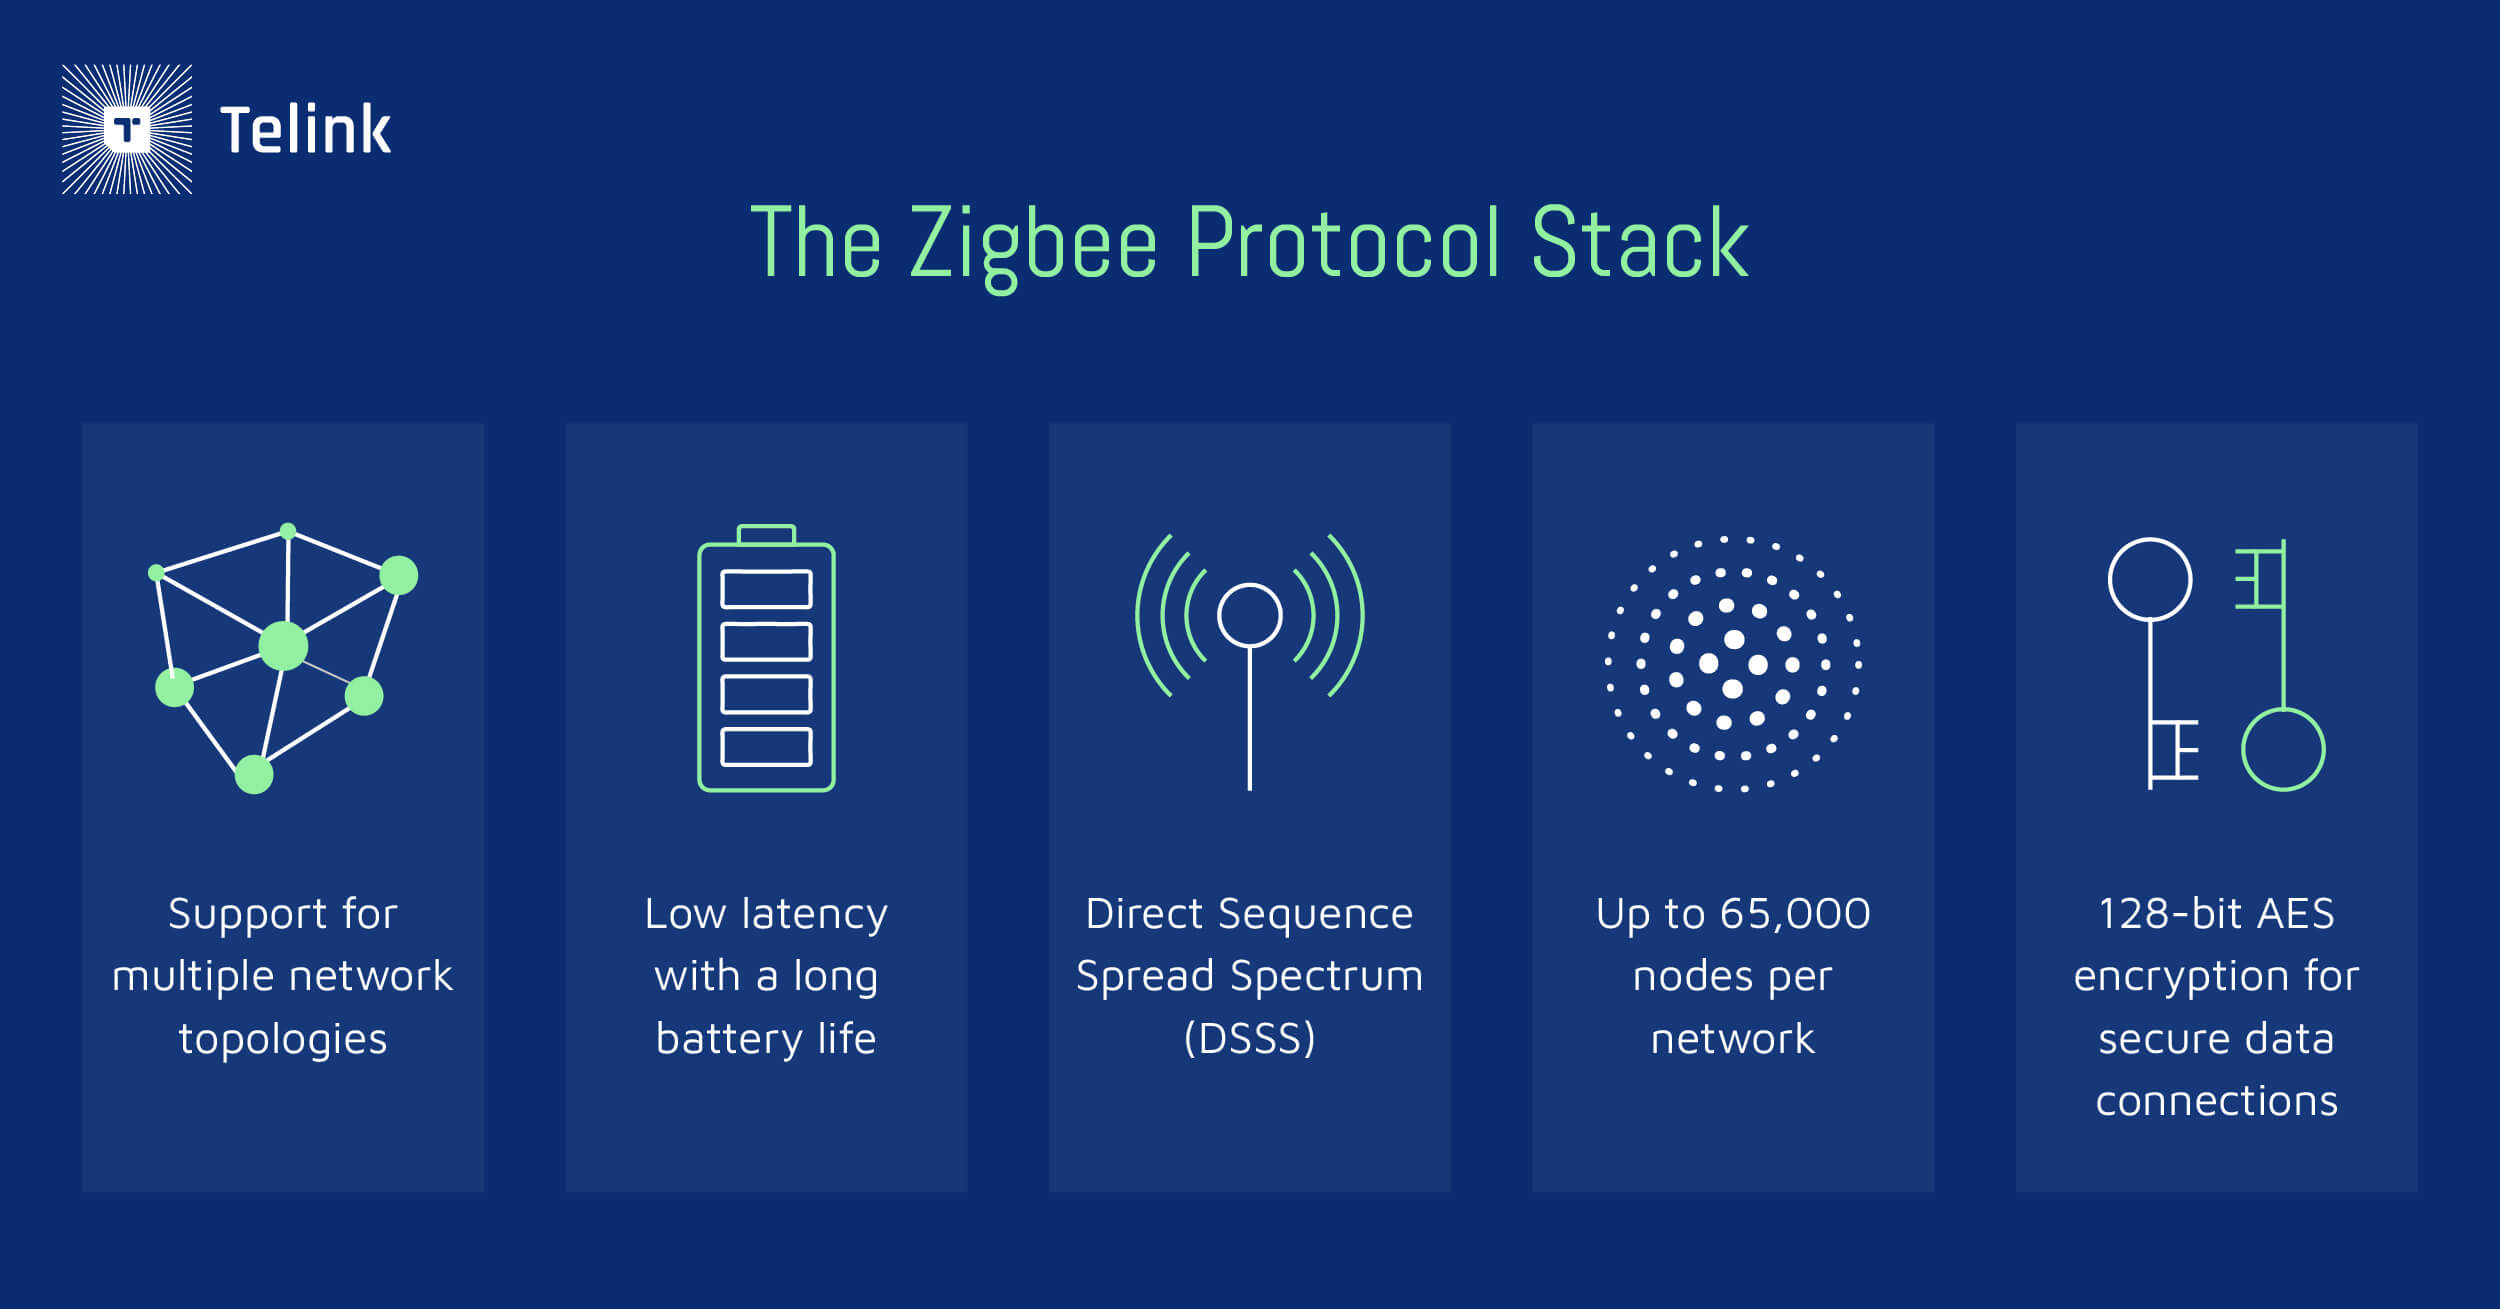 The Zigbee protocol stack